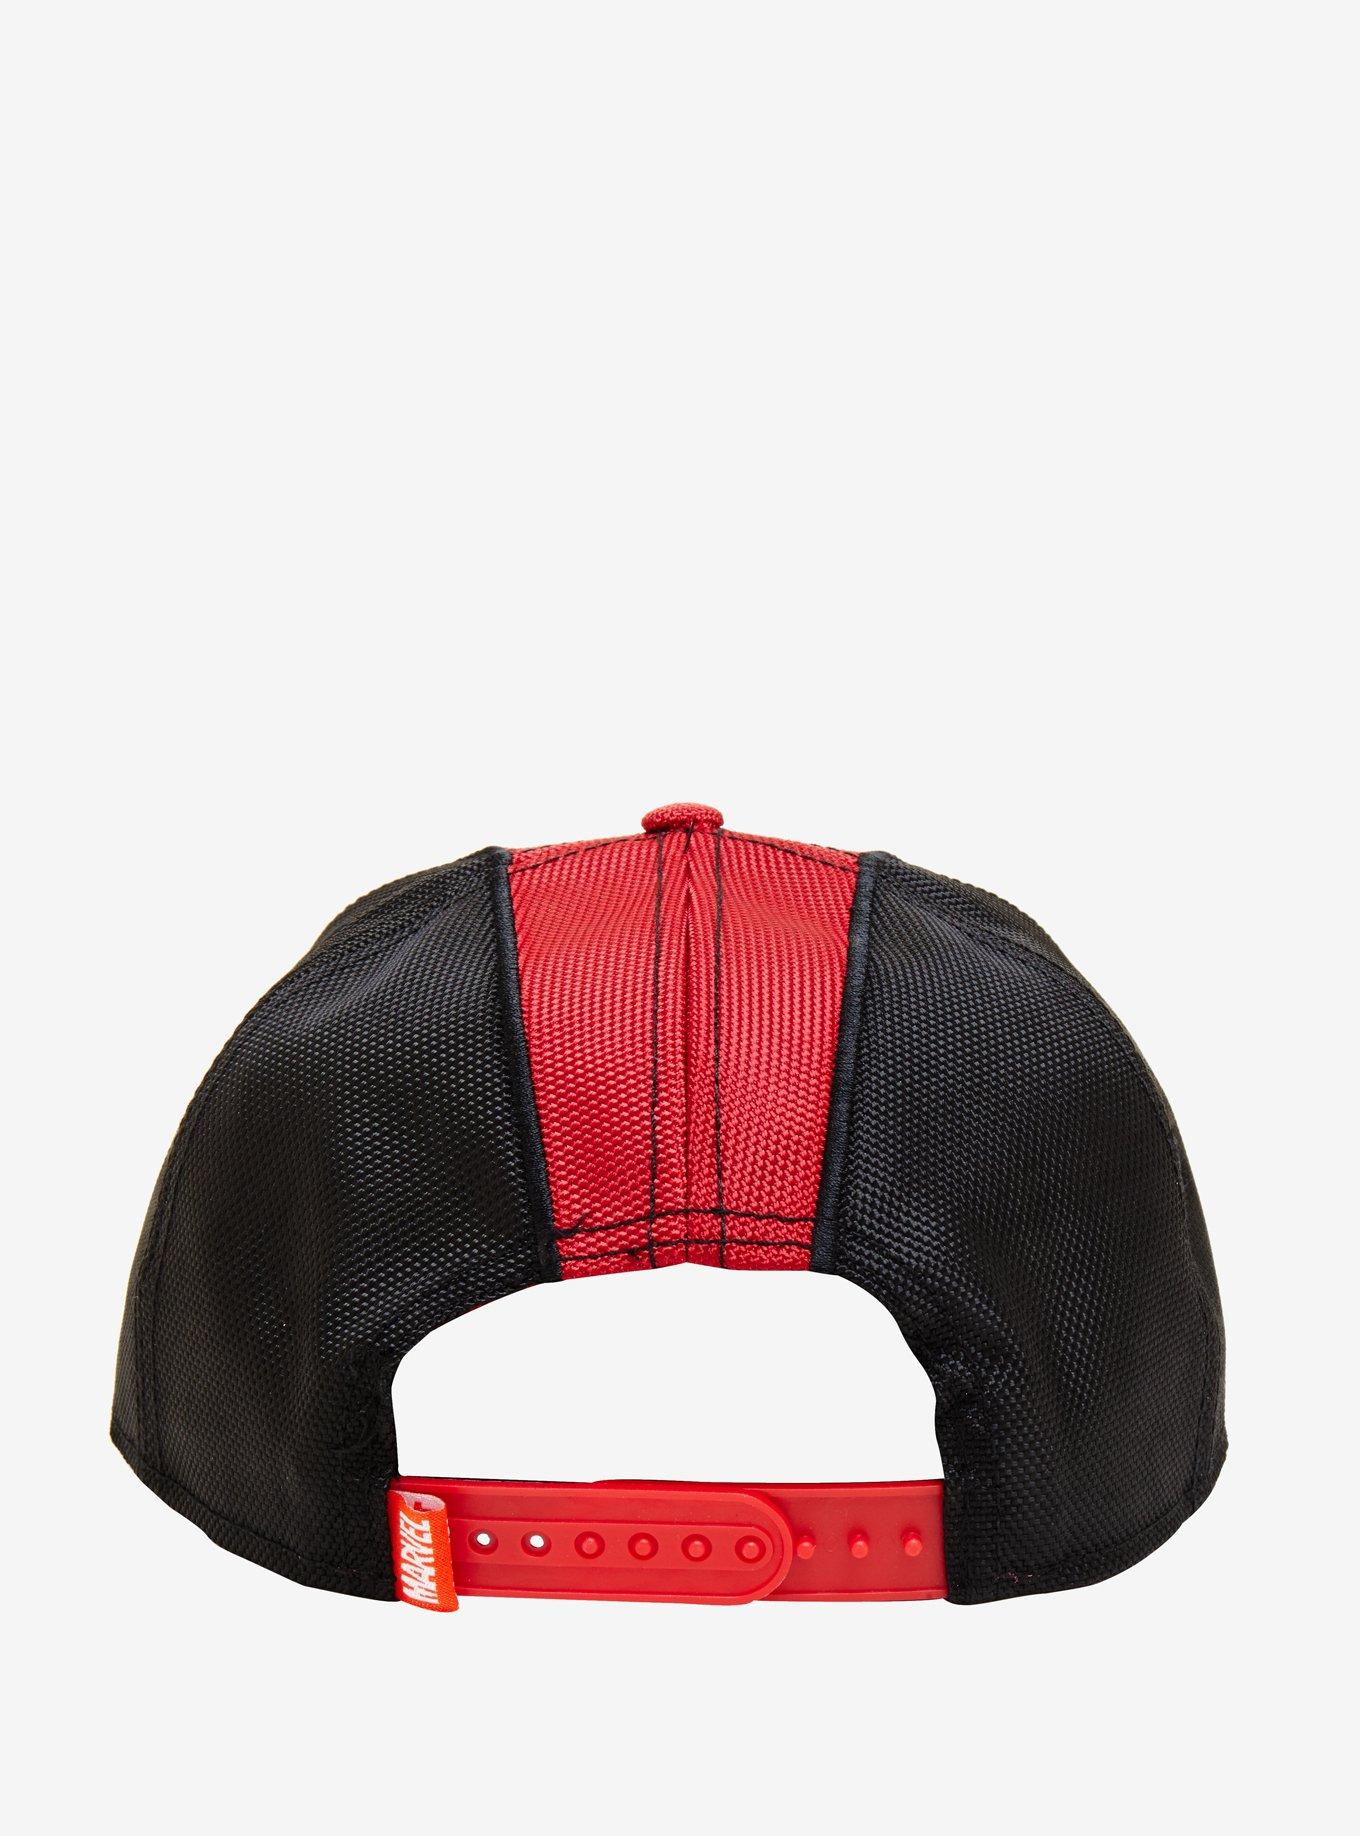 Marvel Deadpool Suit Snapback Hat, , alternate